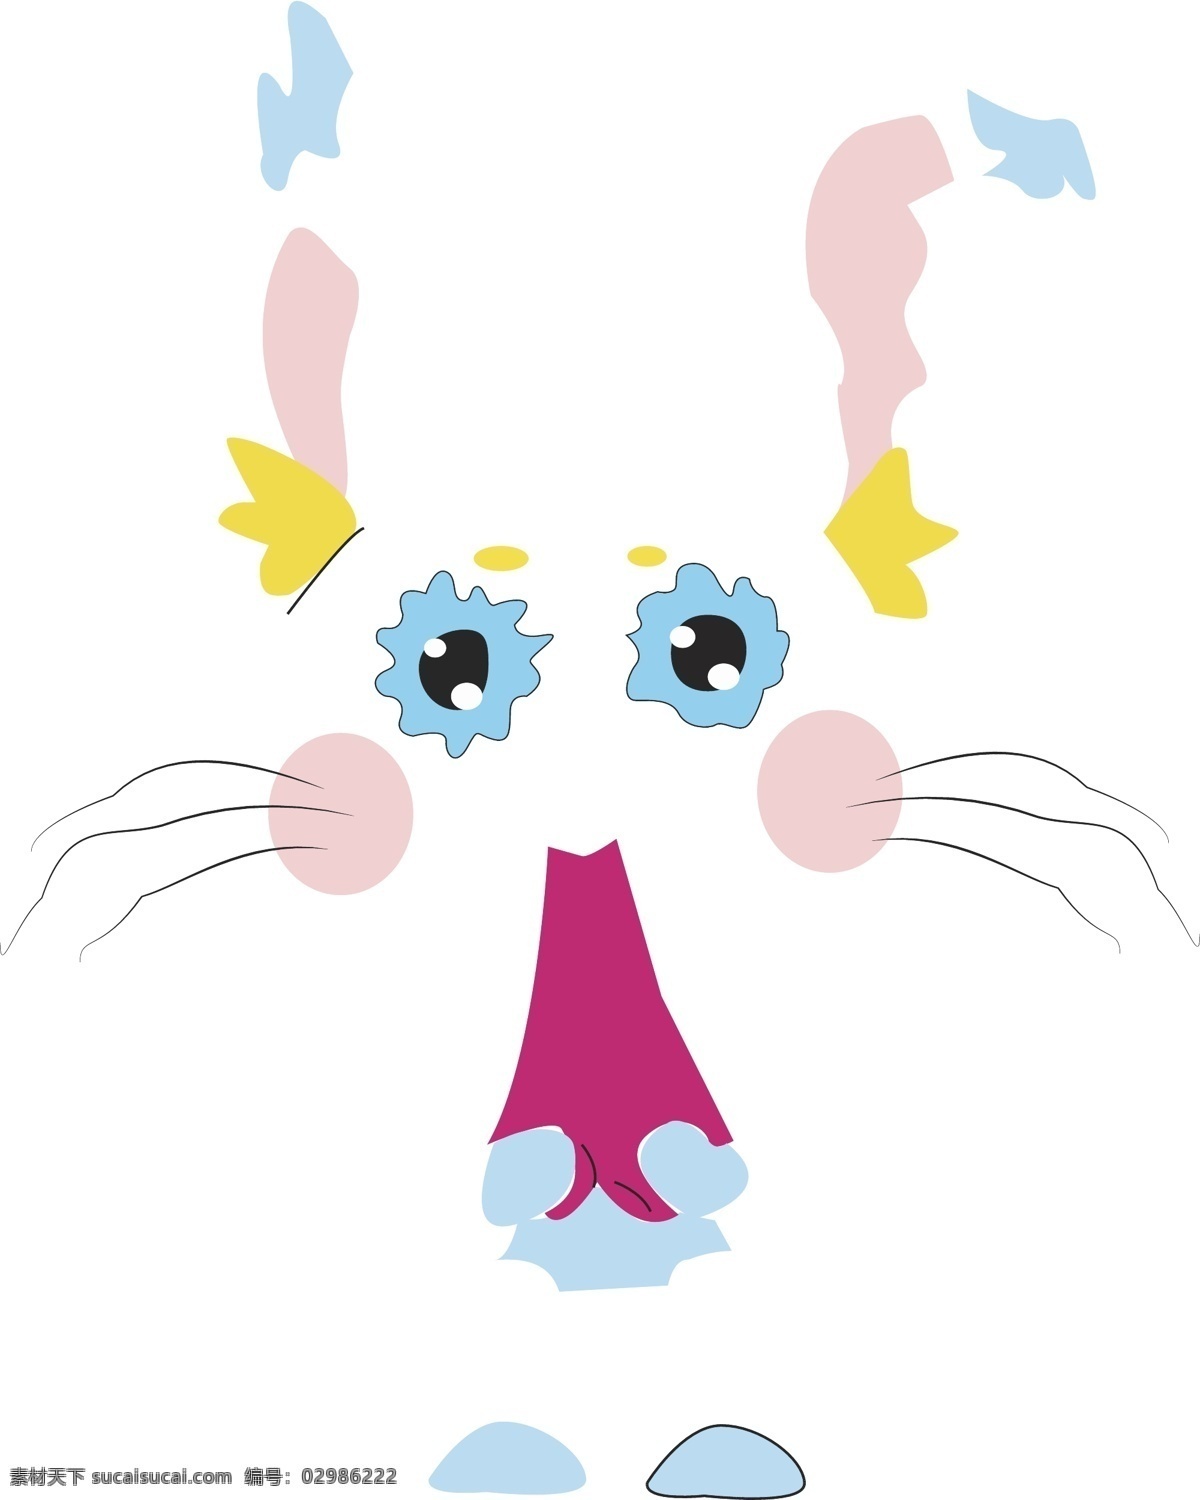 想哭趣味兔子 兔子 惊讶 搞笑 趣味 卡通 哭脸 呆萌 动漫动画